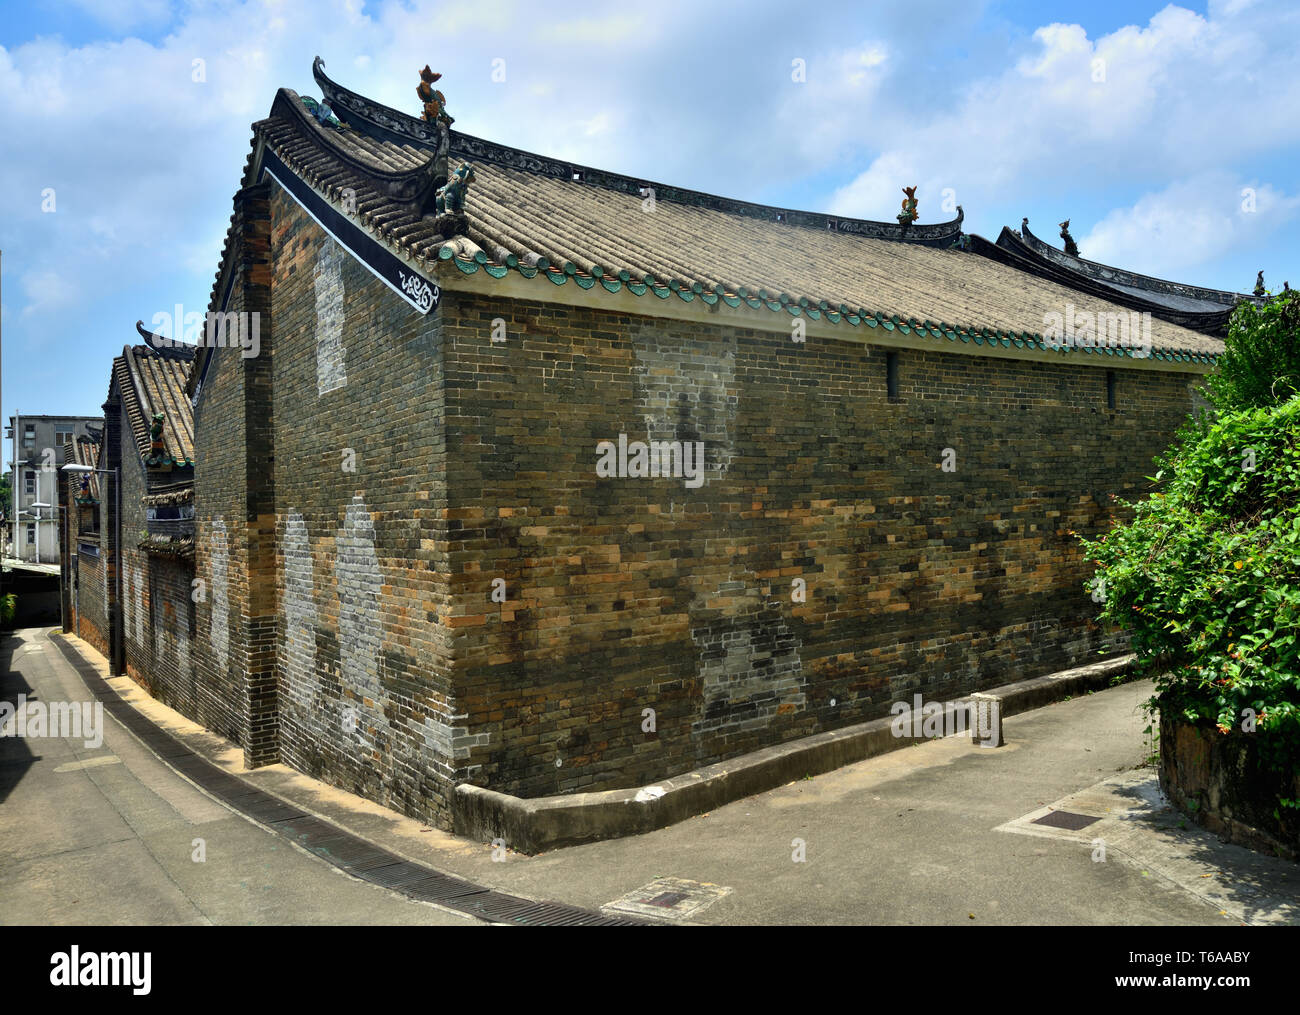 Maisons en briques de style chinois ancien, Ping Shan, Hong Kong Banque D'Images